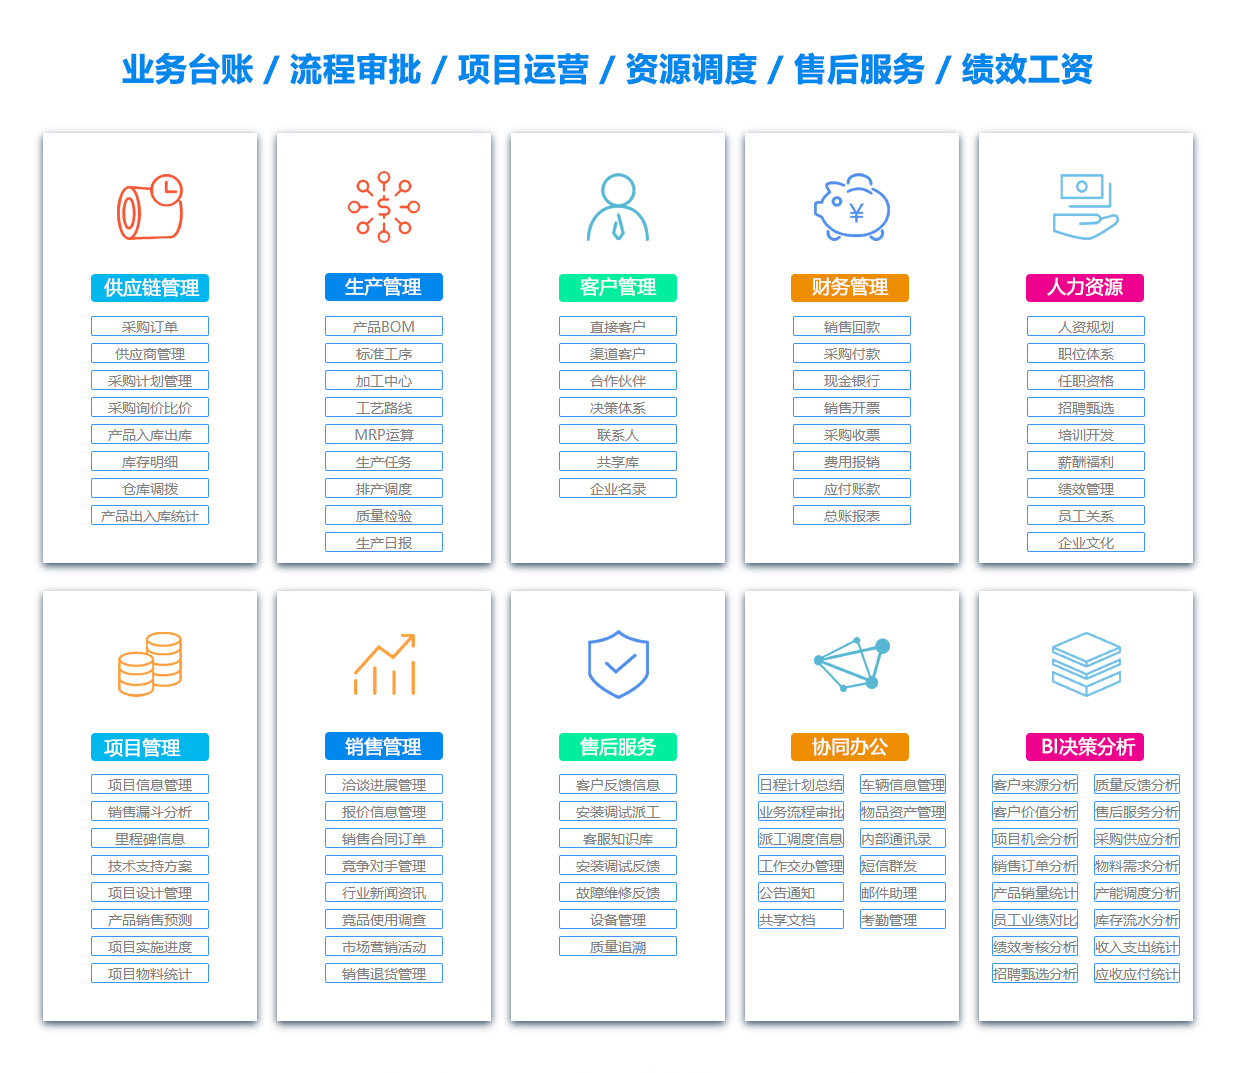 柳州EC:电子商务软件